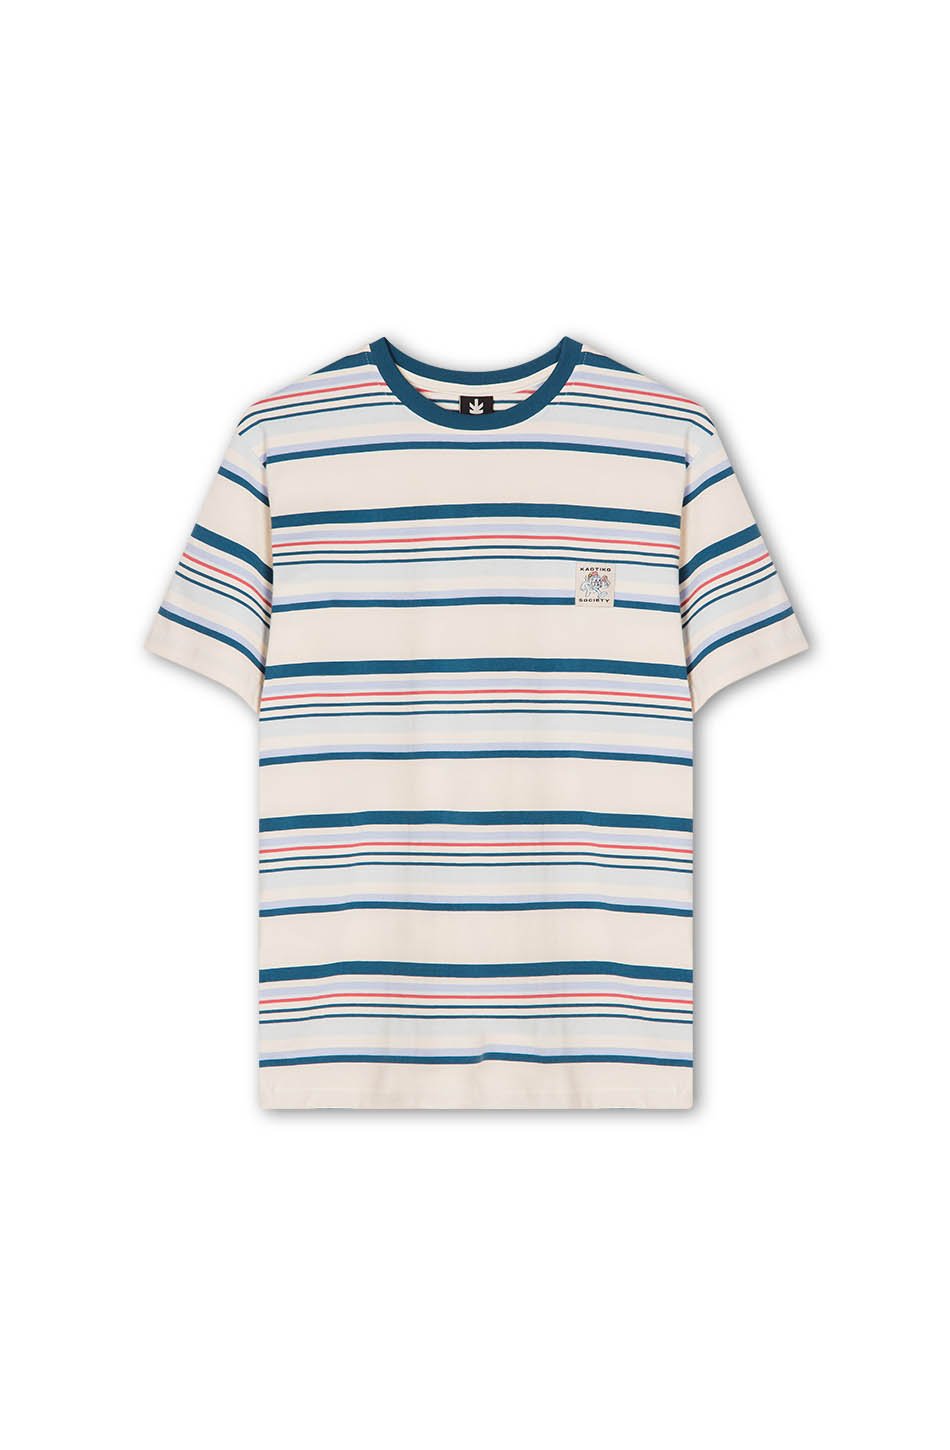 Giovanni World Stripes T-shirt